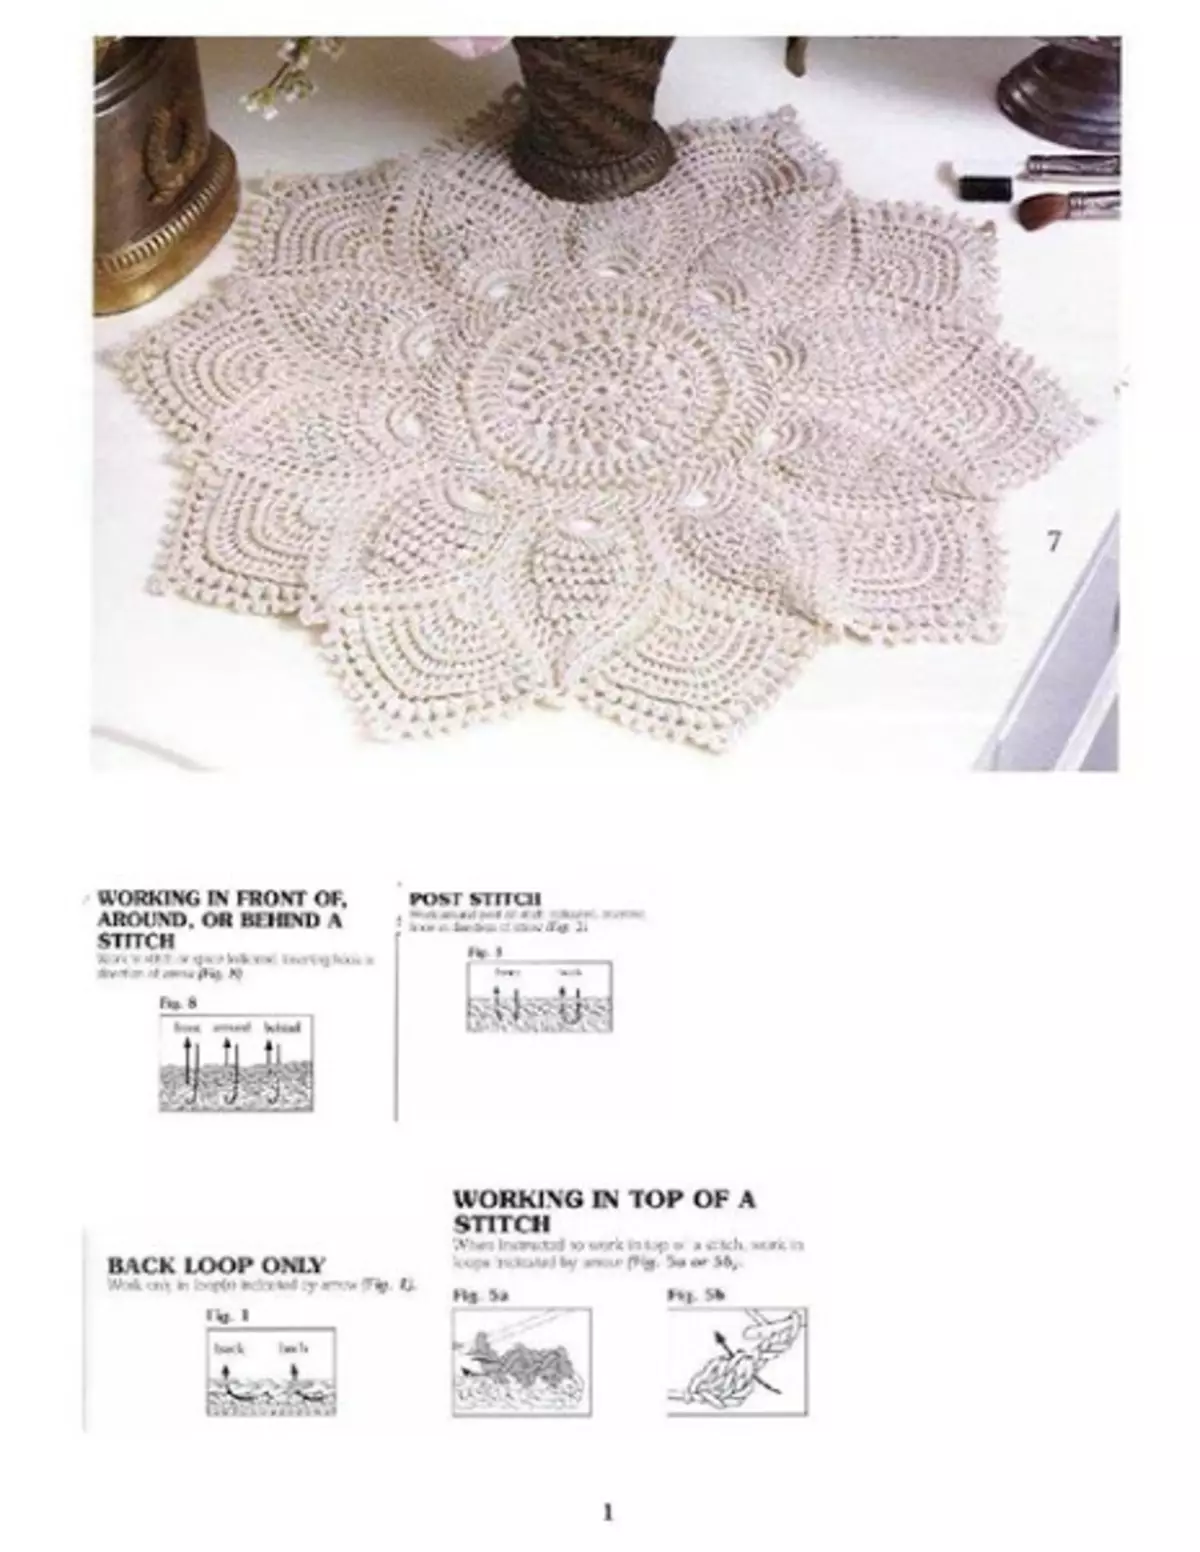 ພົມປູພື້ນ Crochet ຢູ່ເທິງພື້ນ: ລະບົບສໍາລັບການສ້າງຜະລິດຕະພັນຮູບໄຂ່